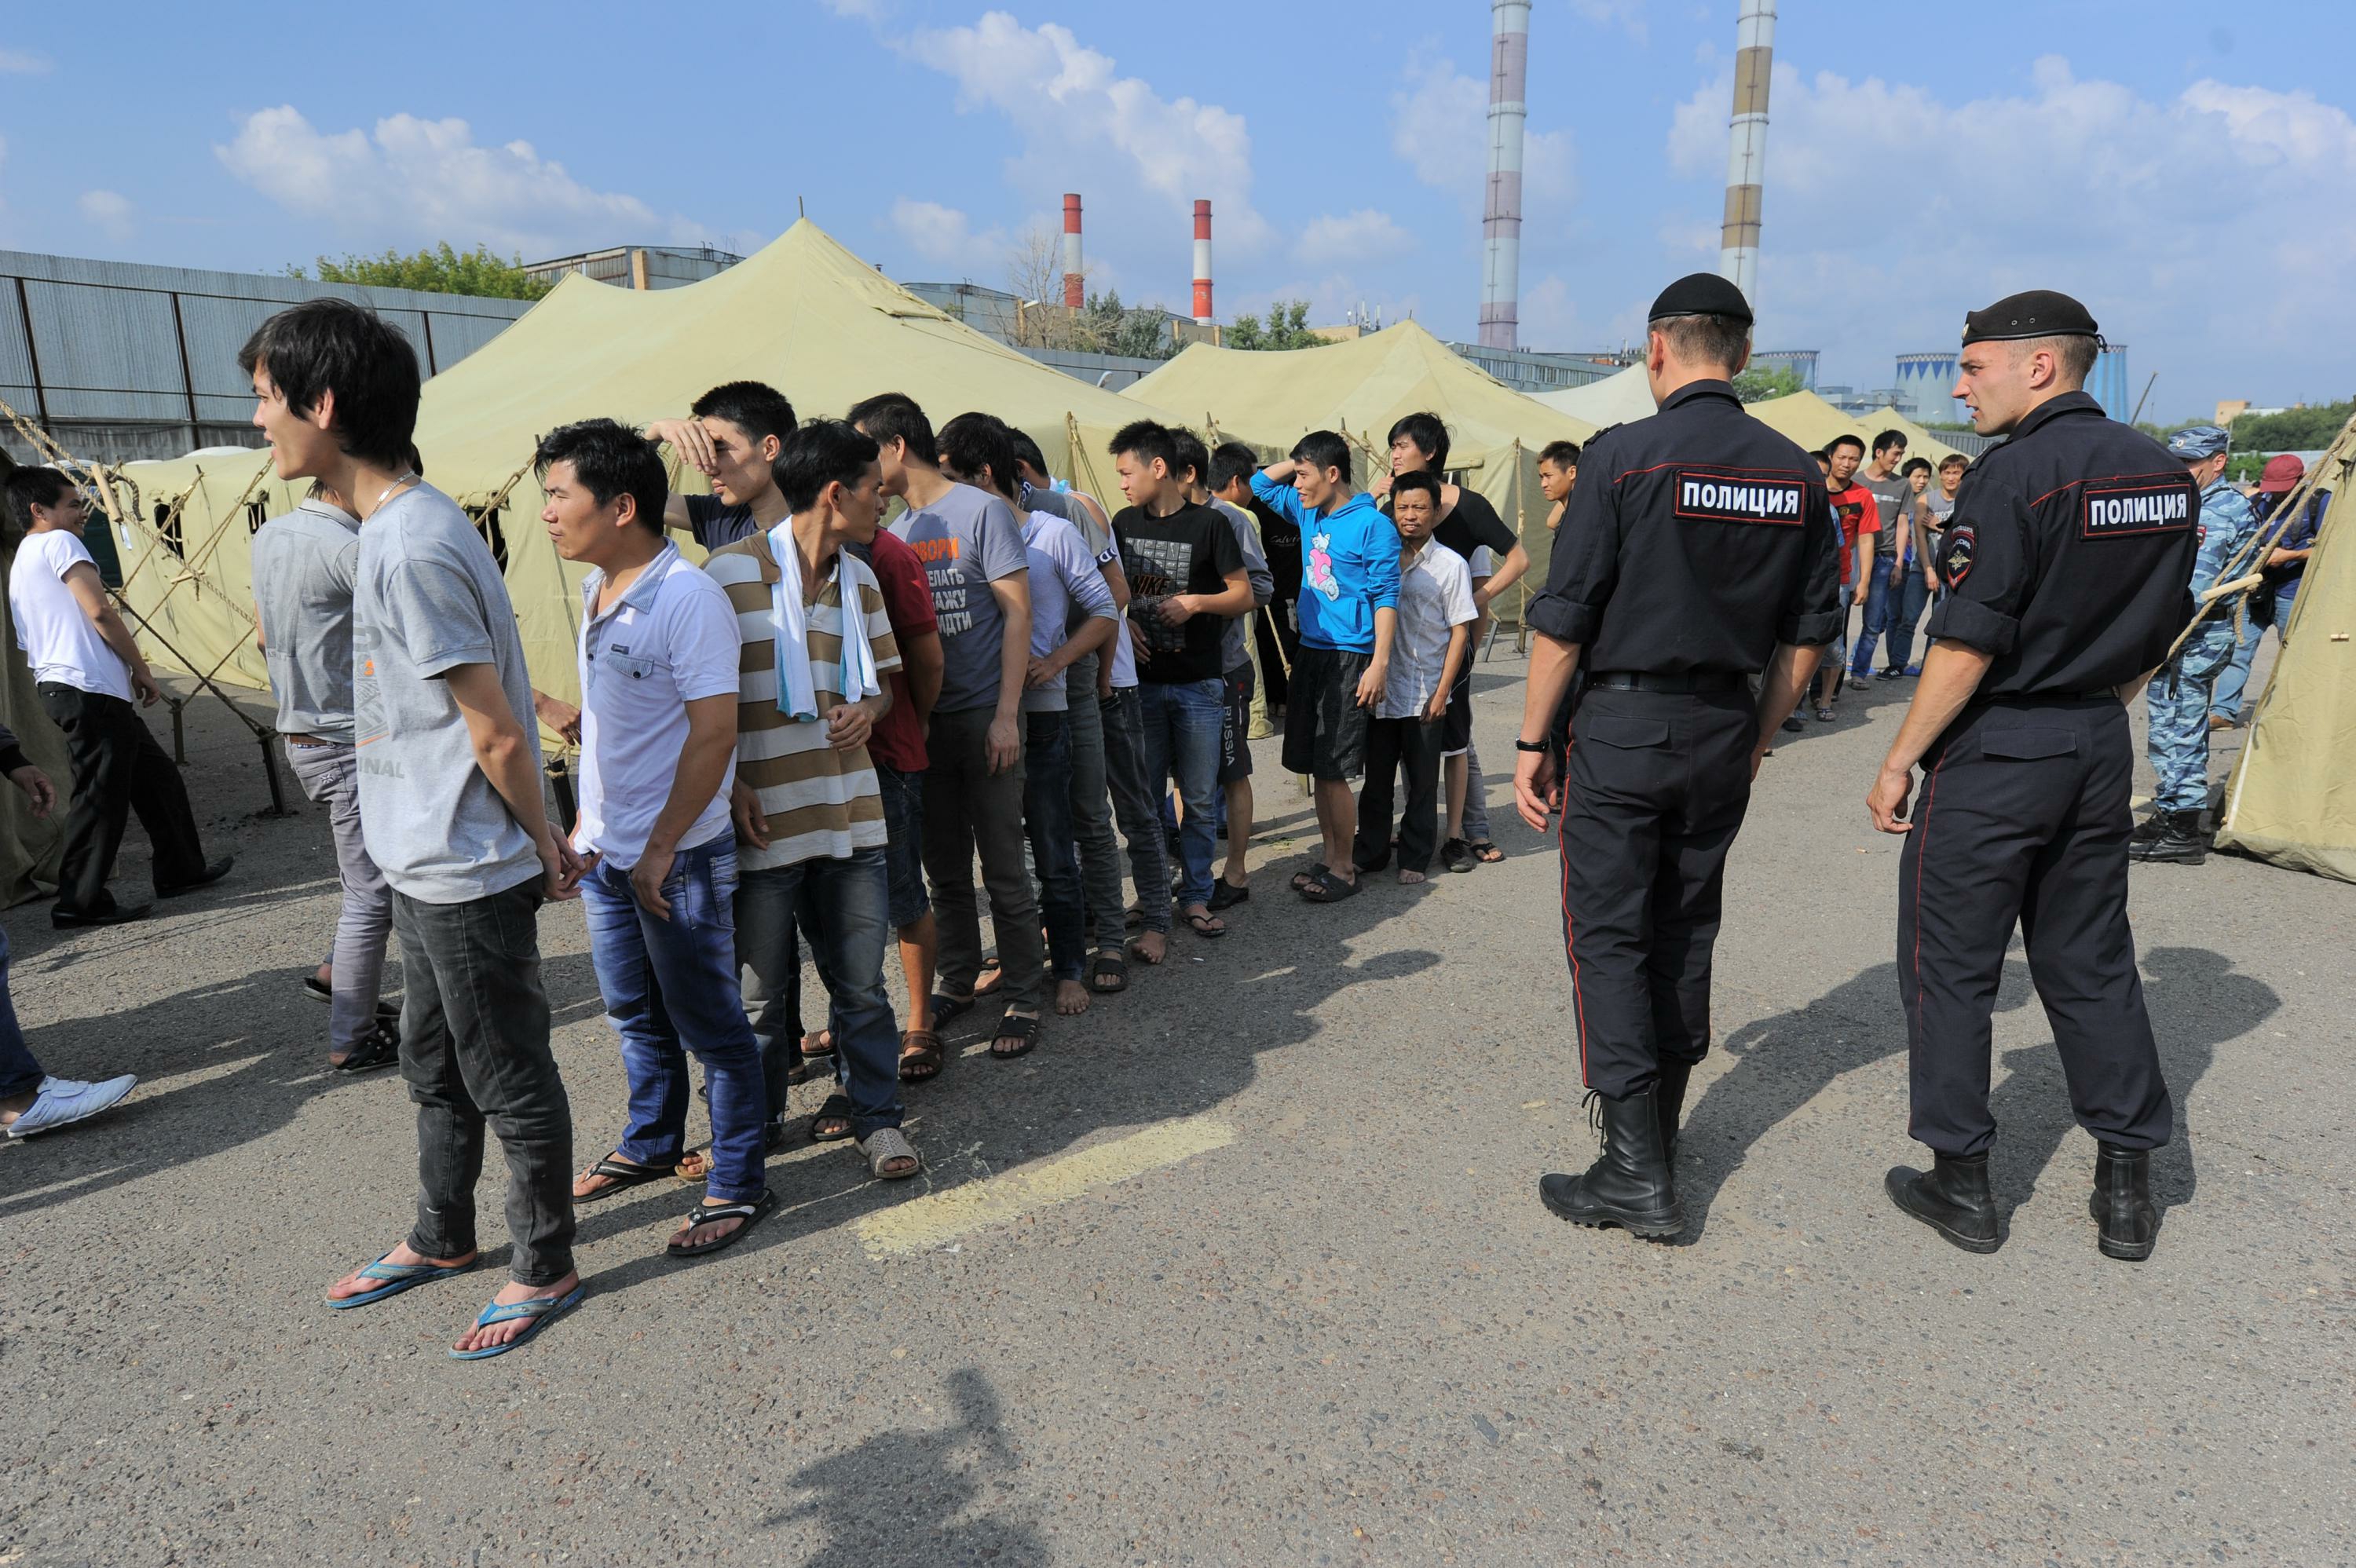 Поймали таджиков в москве. Полиция задерживает мигрантов. Преступность мигрантов. Киргизы в России.